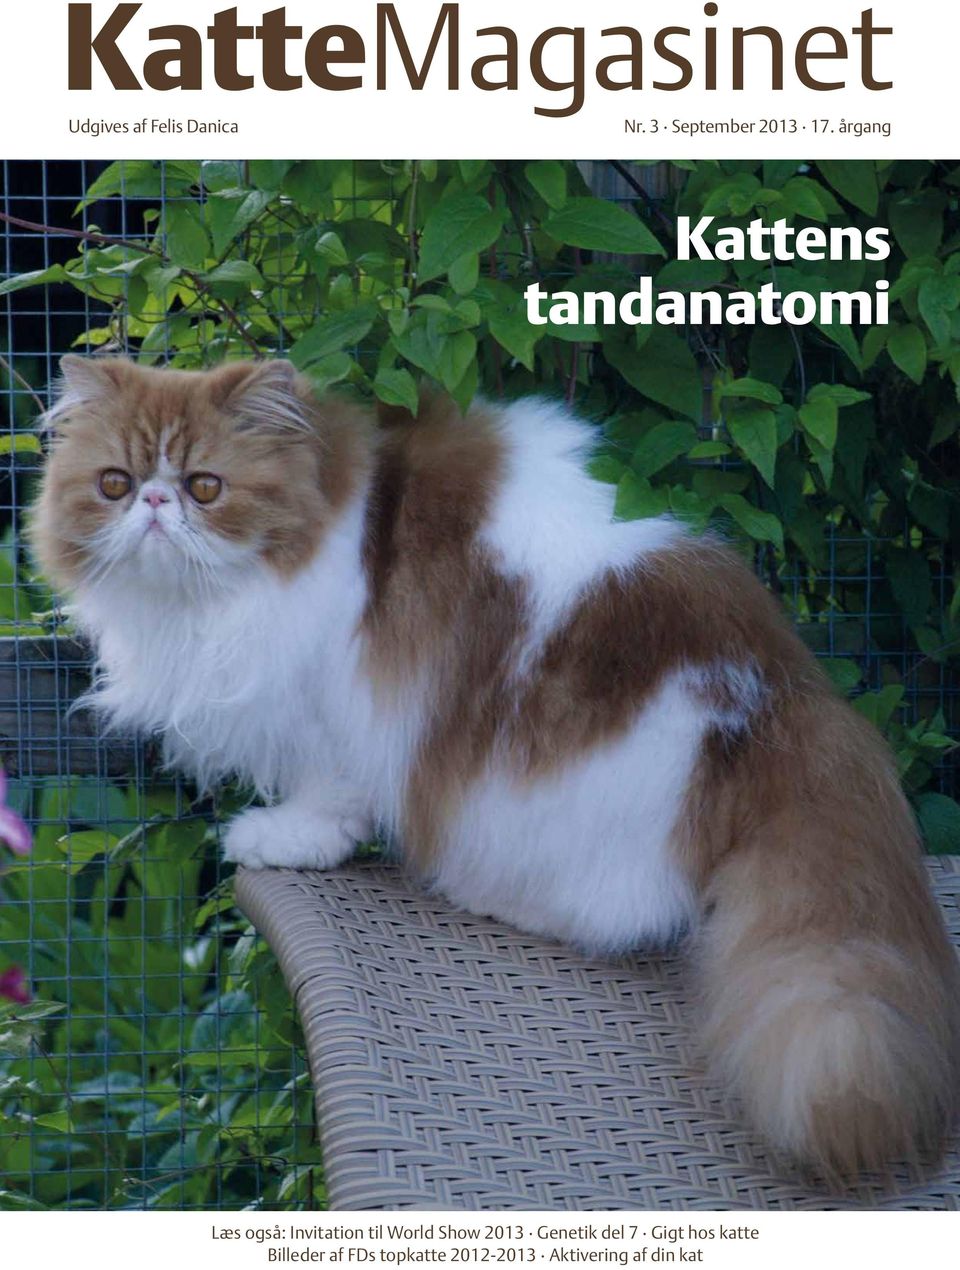 KatteMagasinet Udgives Danica - PDF Free Download